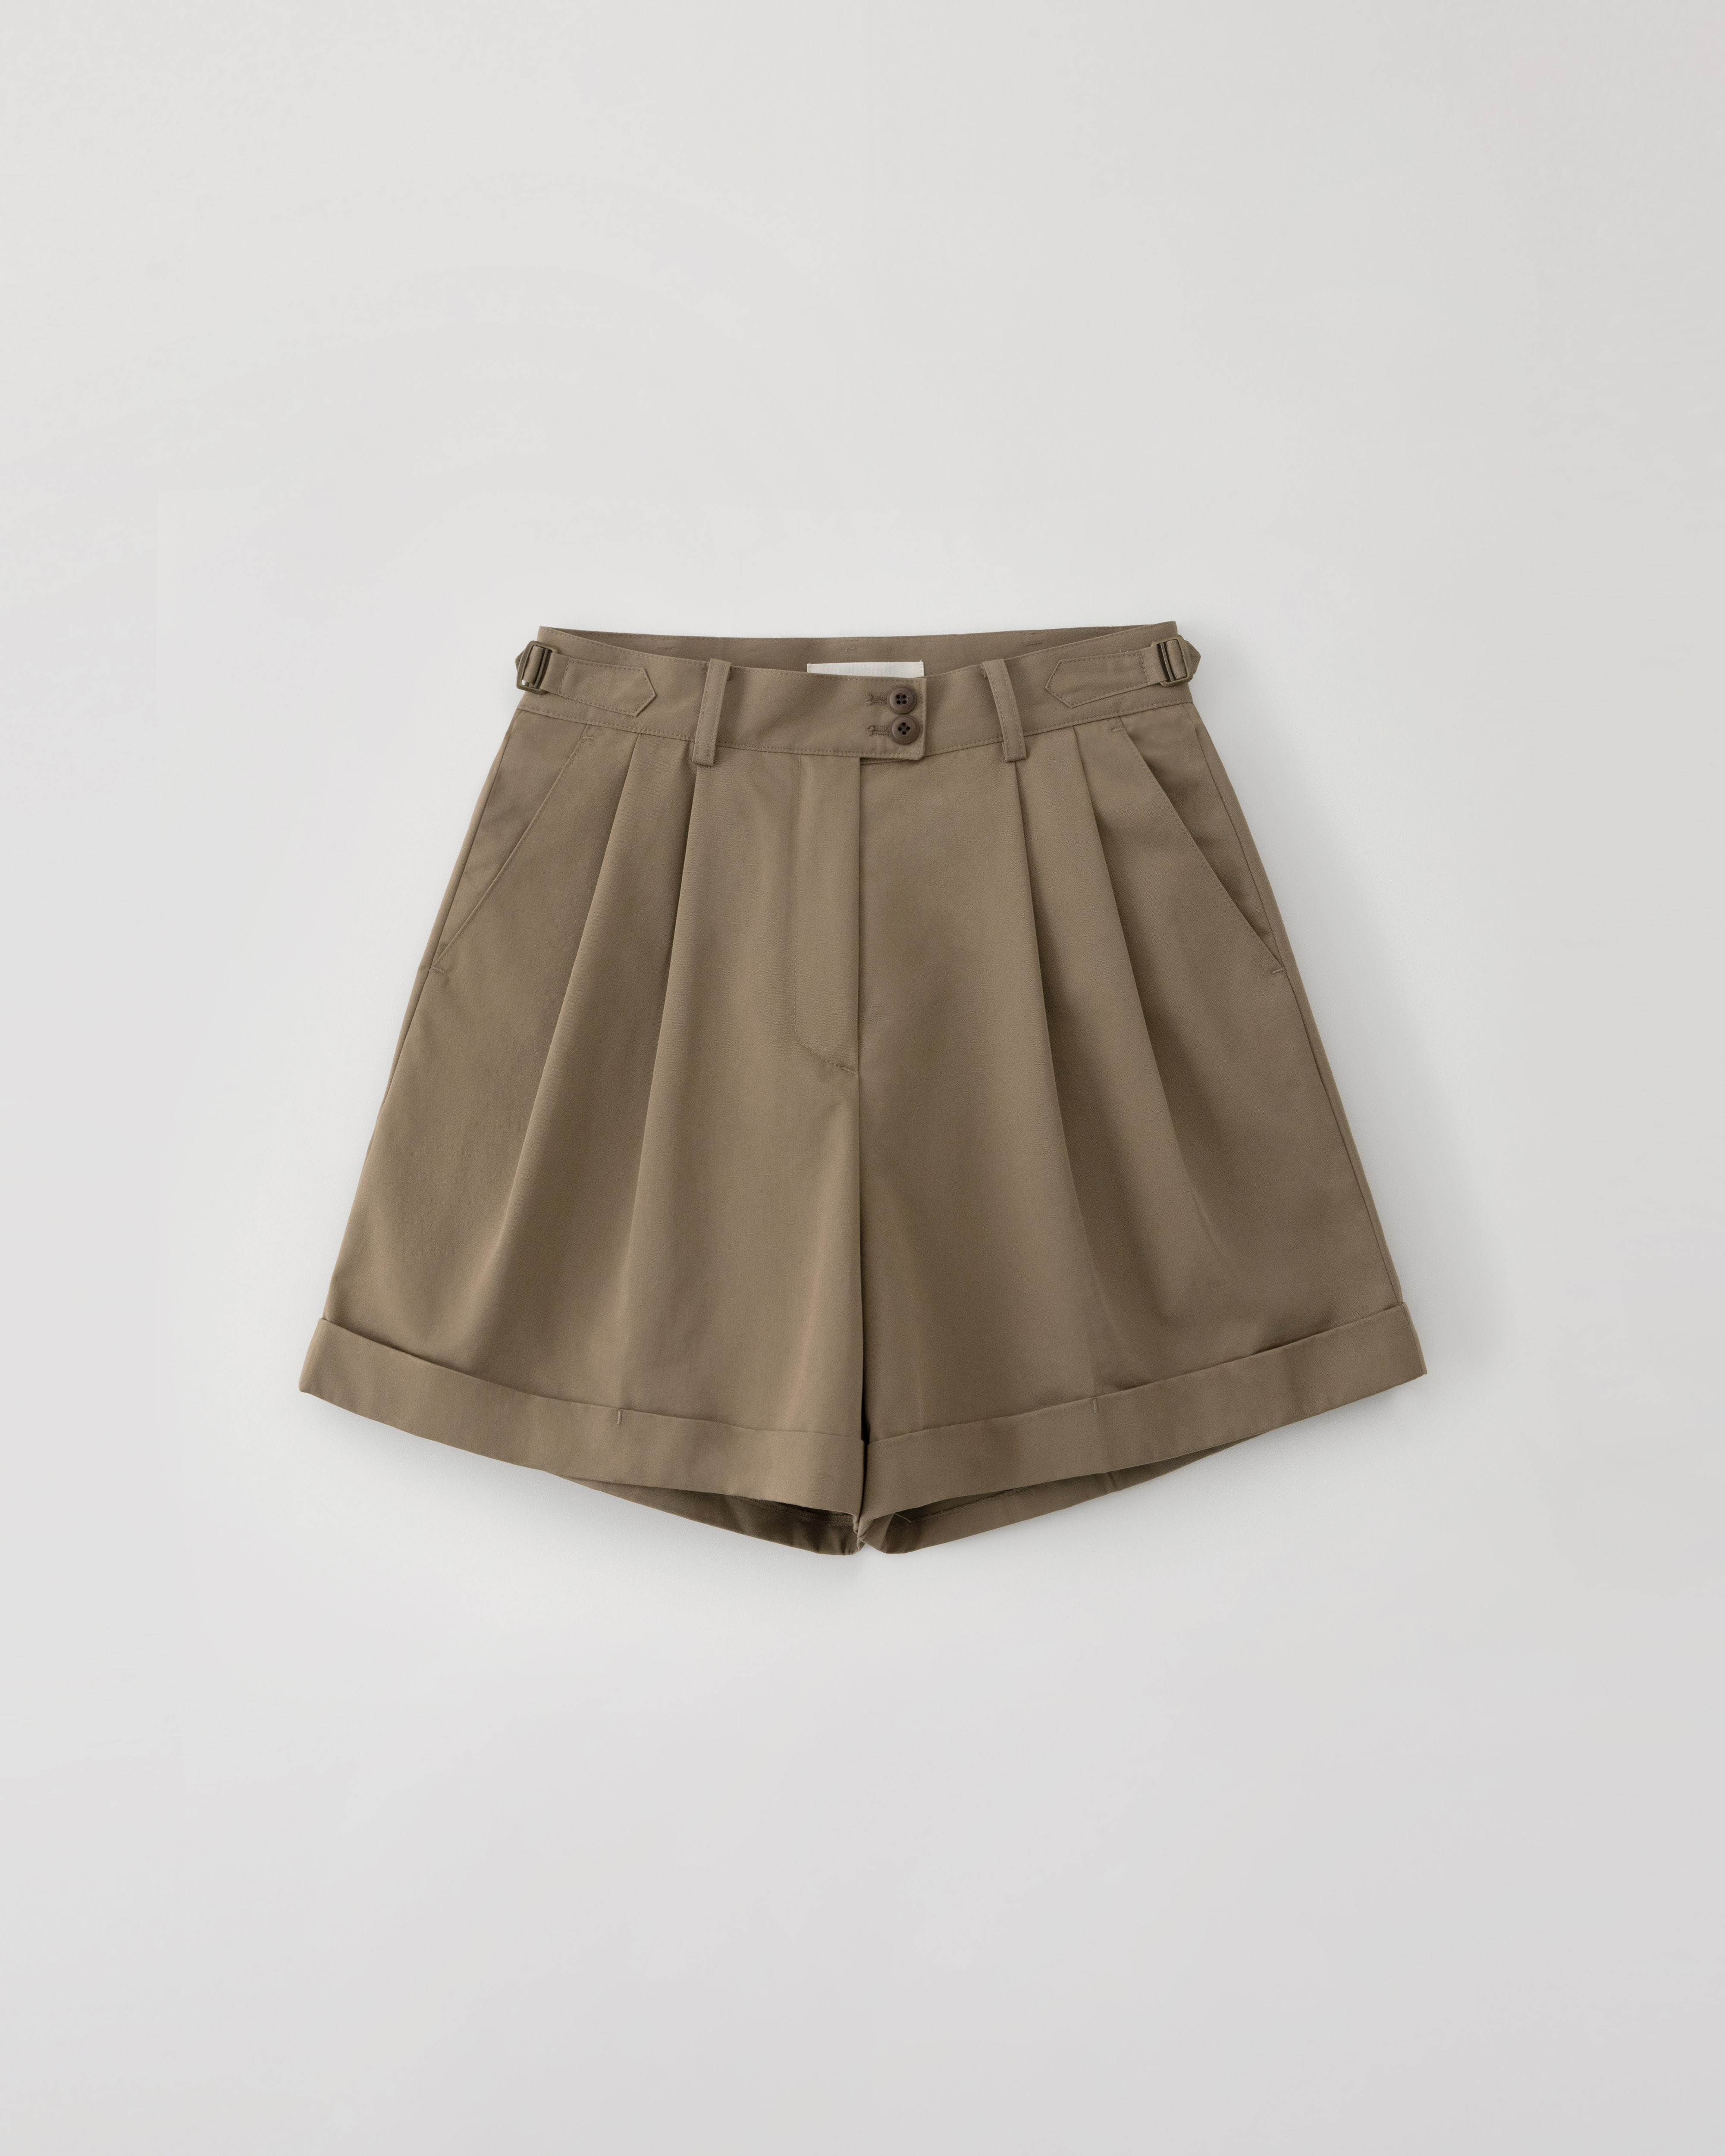 3/29(금) 발매예정 Winnona travel shorts - mocha brown